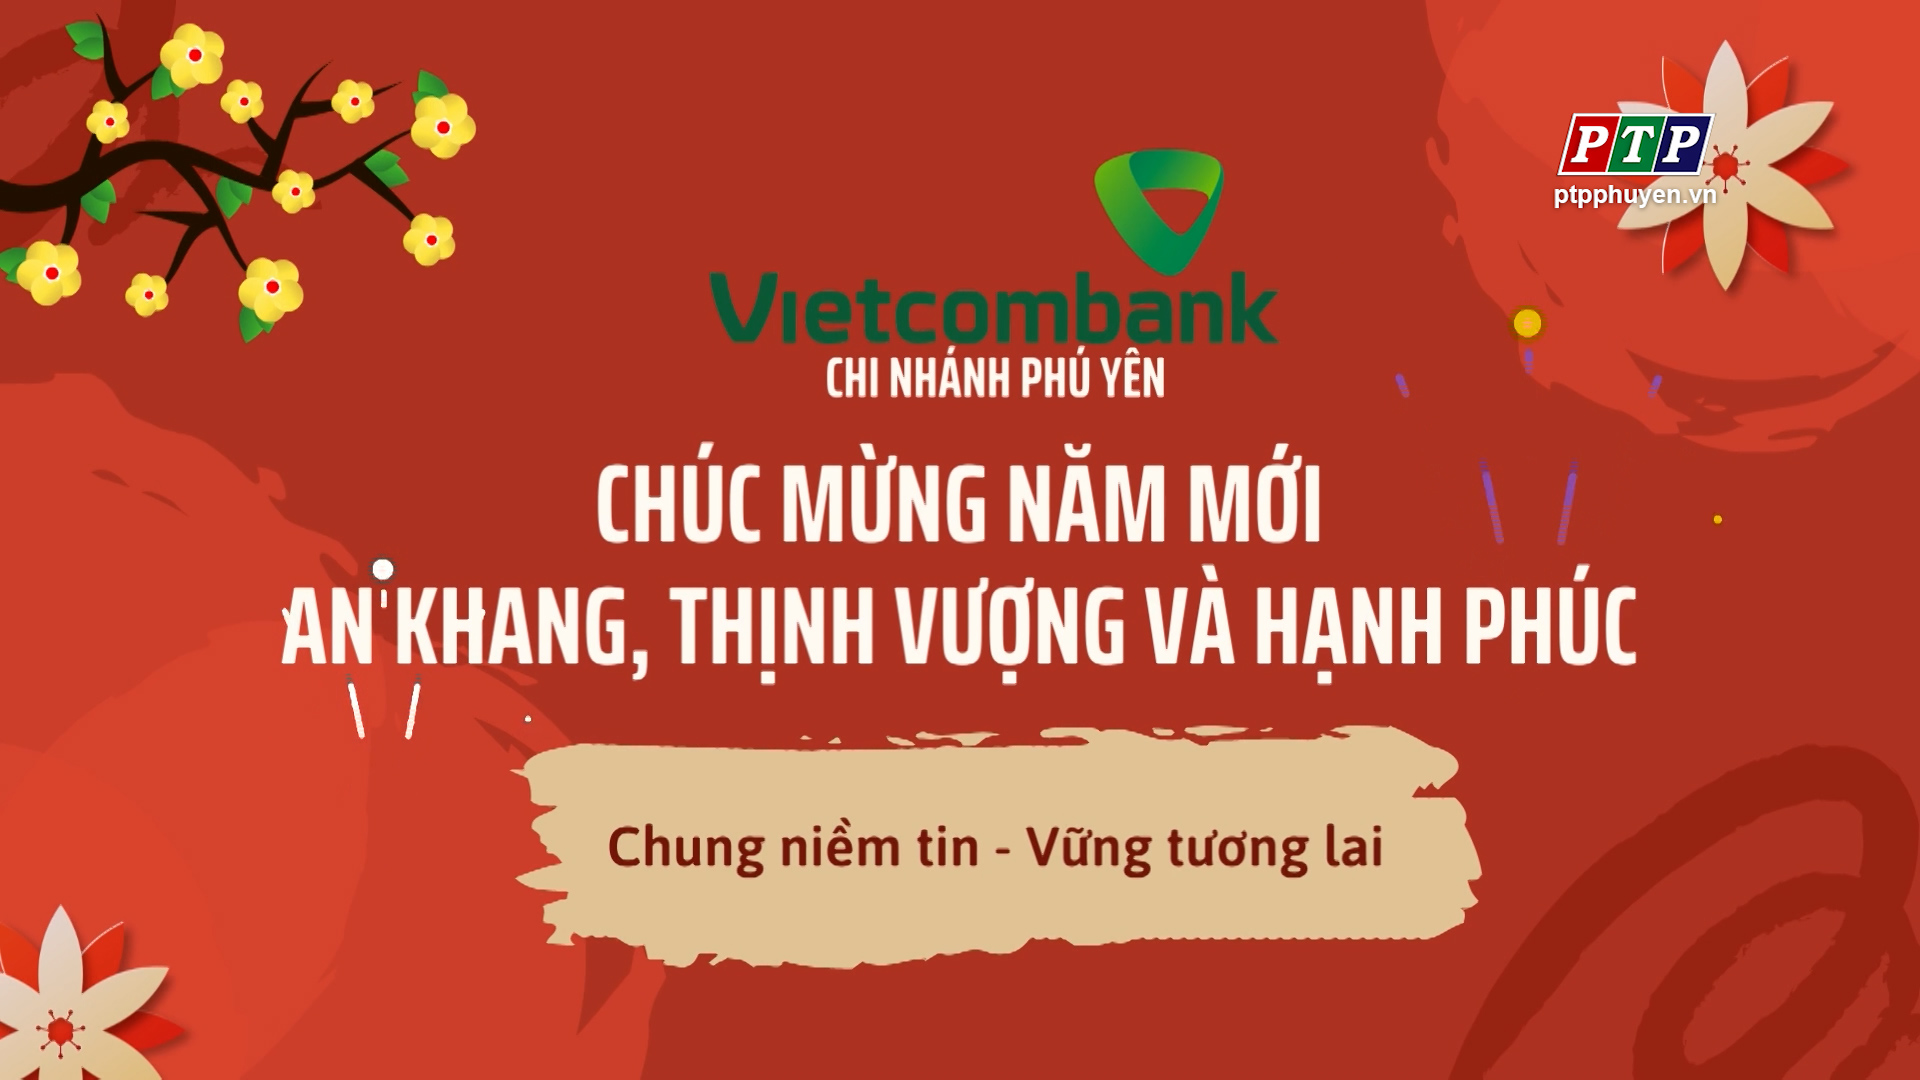 Vietcombank Phú Yên Chúc Mừng Năm Mới